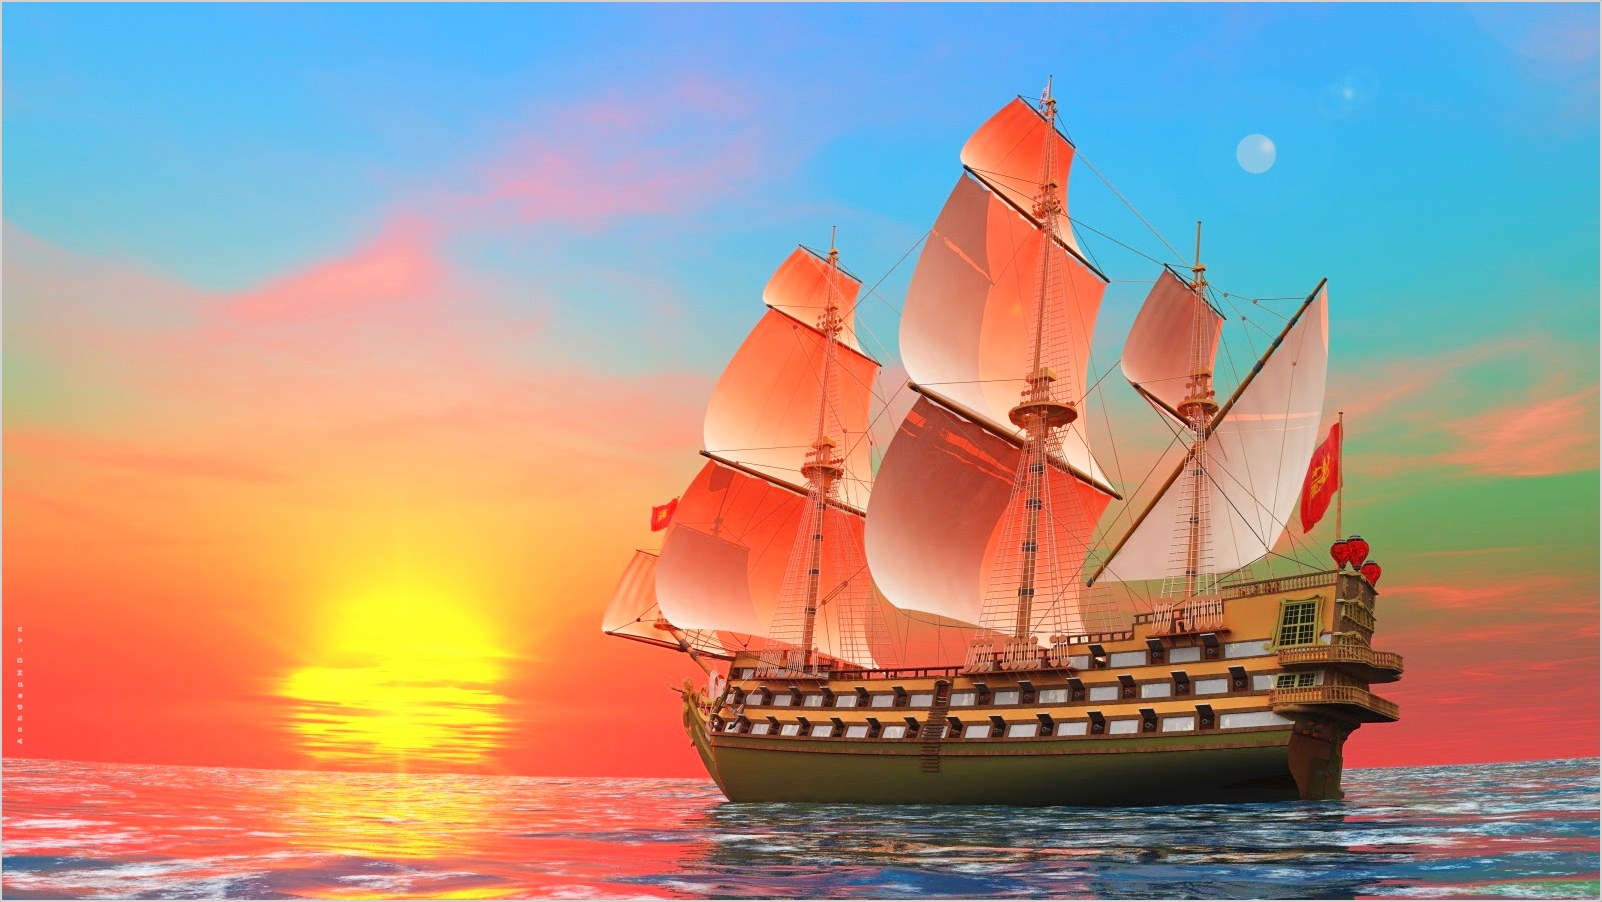 Hình ảnh thuyền buồm tuyệt đẹp này sẽ khiến bạn thăng hoa với khung cảnh biển cả vĩnh cửu và nét cá tính tao nhã của một chiếc thuyền buồm. Hình ảnh như bức tranh vẽ bởi sự ngẫu hợp của mặt trời, mây trời và màu xanh biển. Hãy xem hình ảnh thuyền buồm tuyệt đẹp để tìm hiểu về sự kì diệu đó.